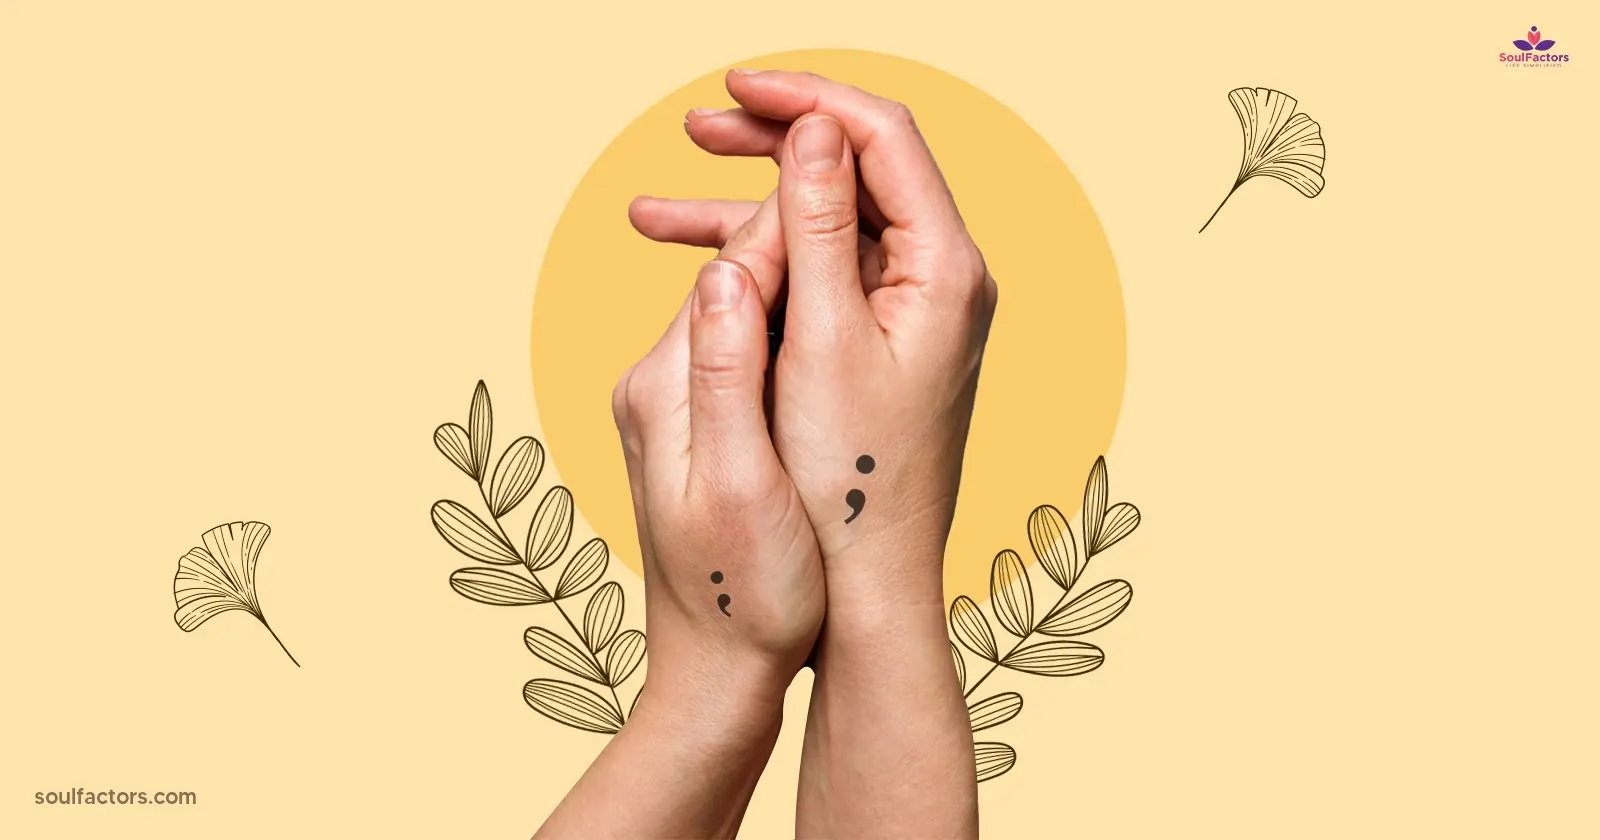 Semicolon Tattoo Ideas - Feature